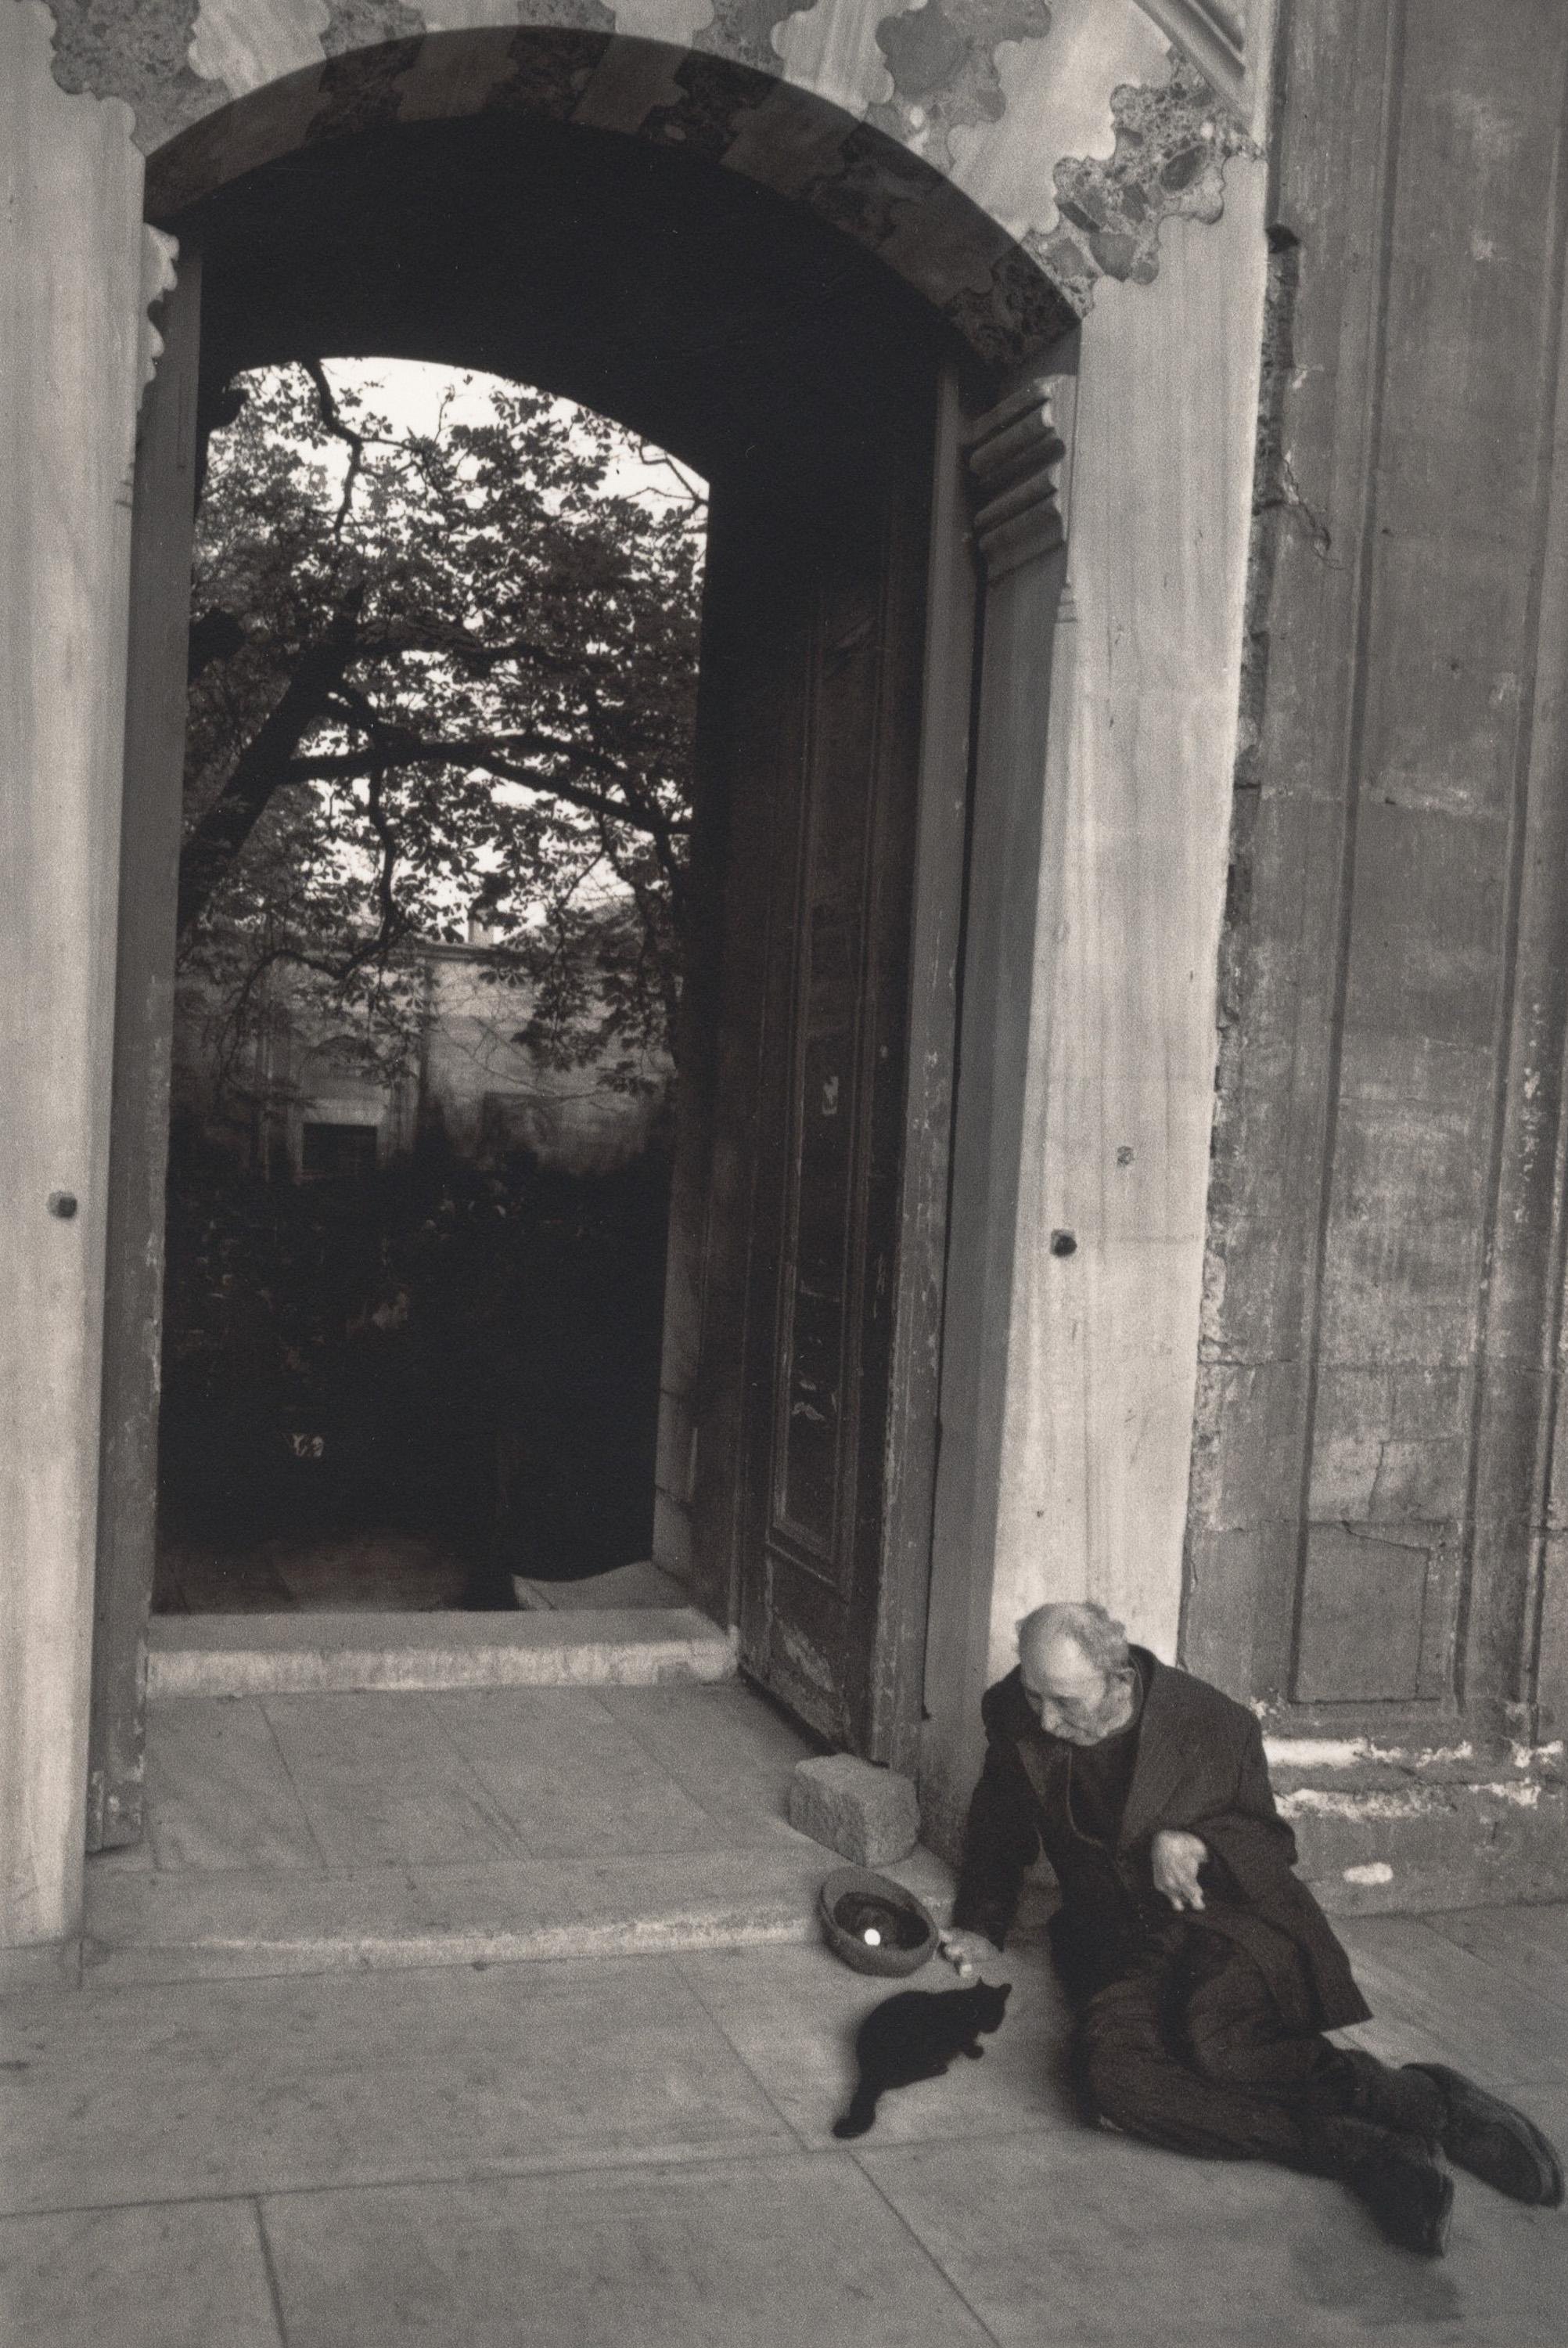 Landscape Photograph Pentti Sammallahti - Istanbul, Turquie (Un homme se penchant près d'une porte, nourrissant un chat)